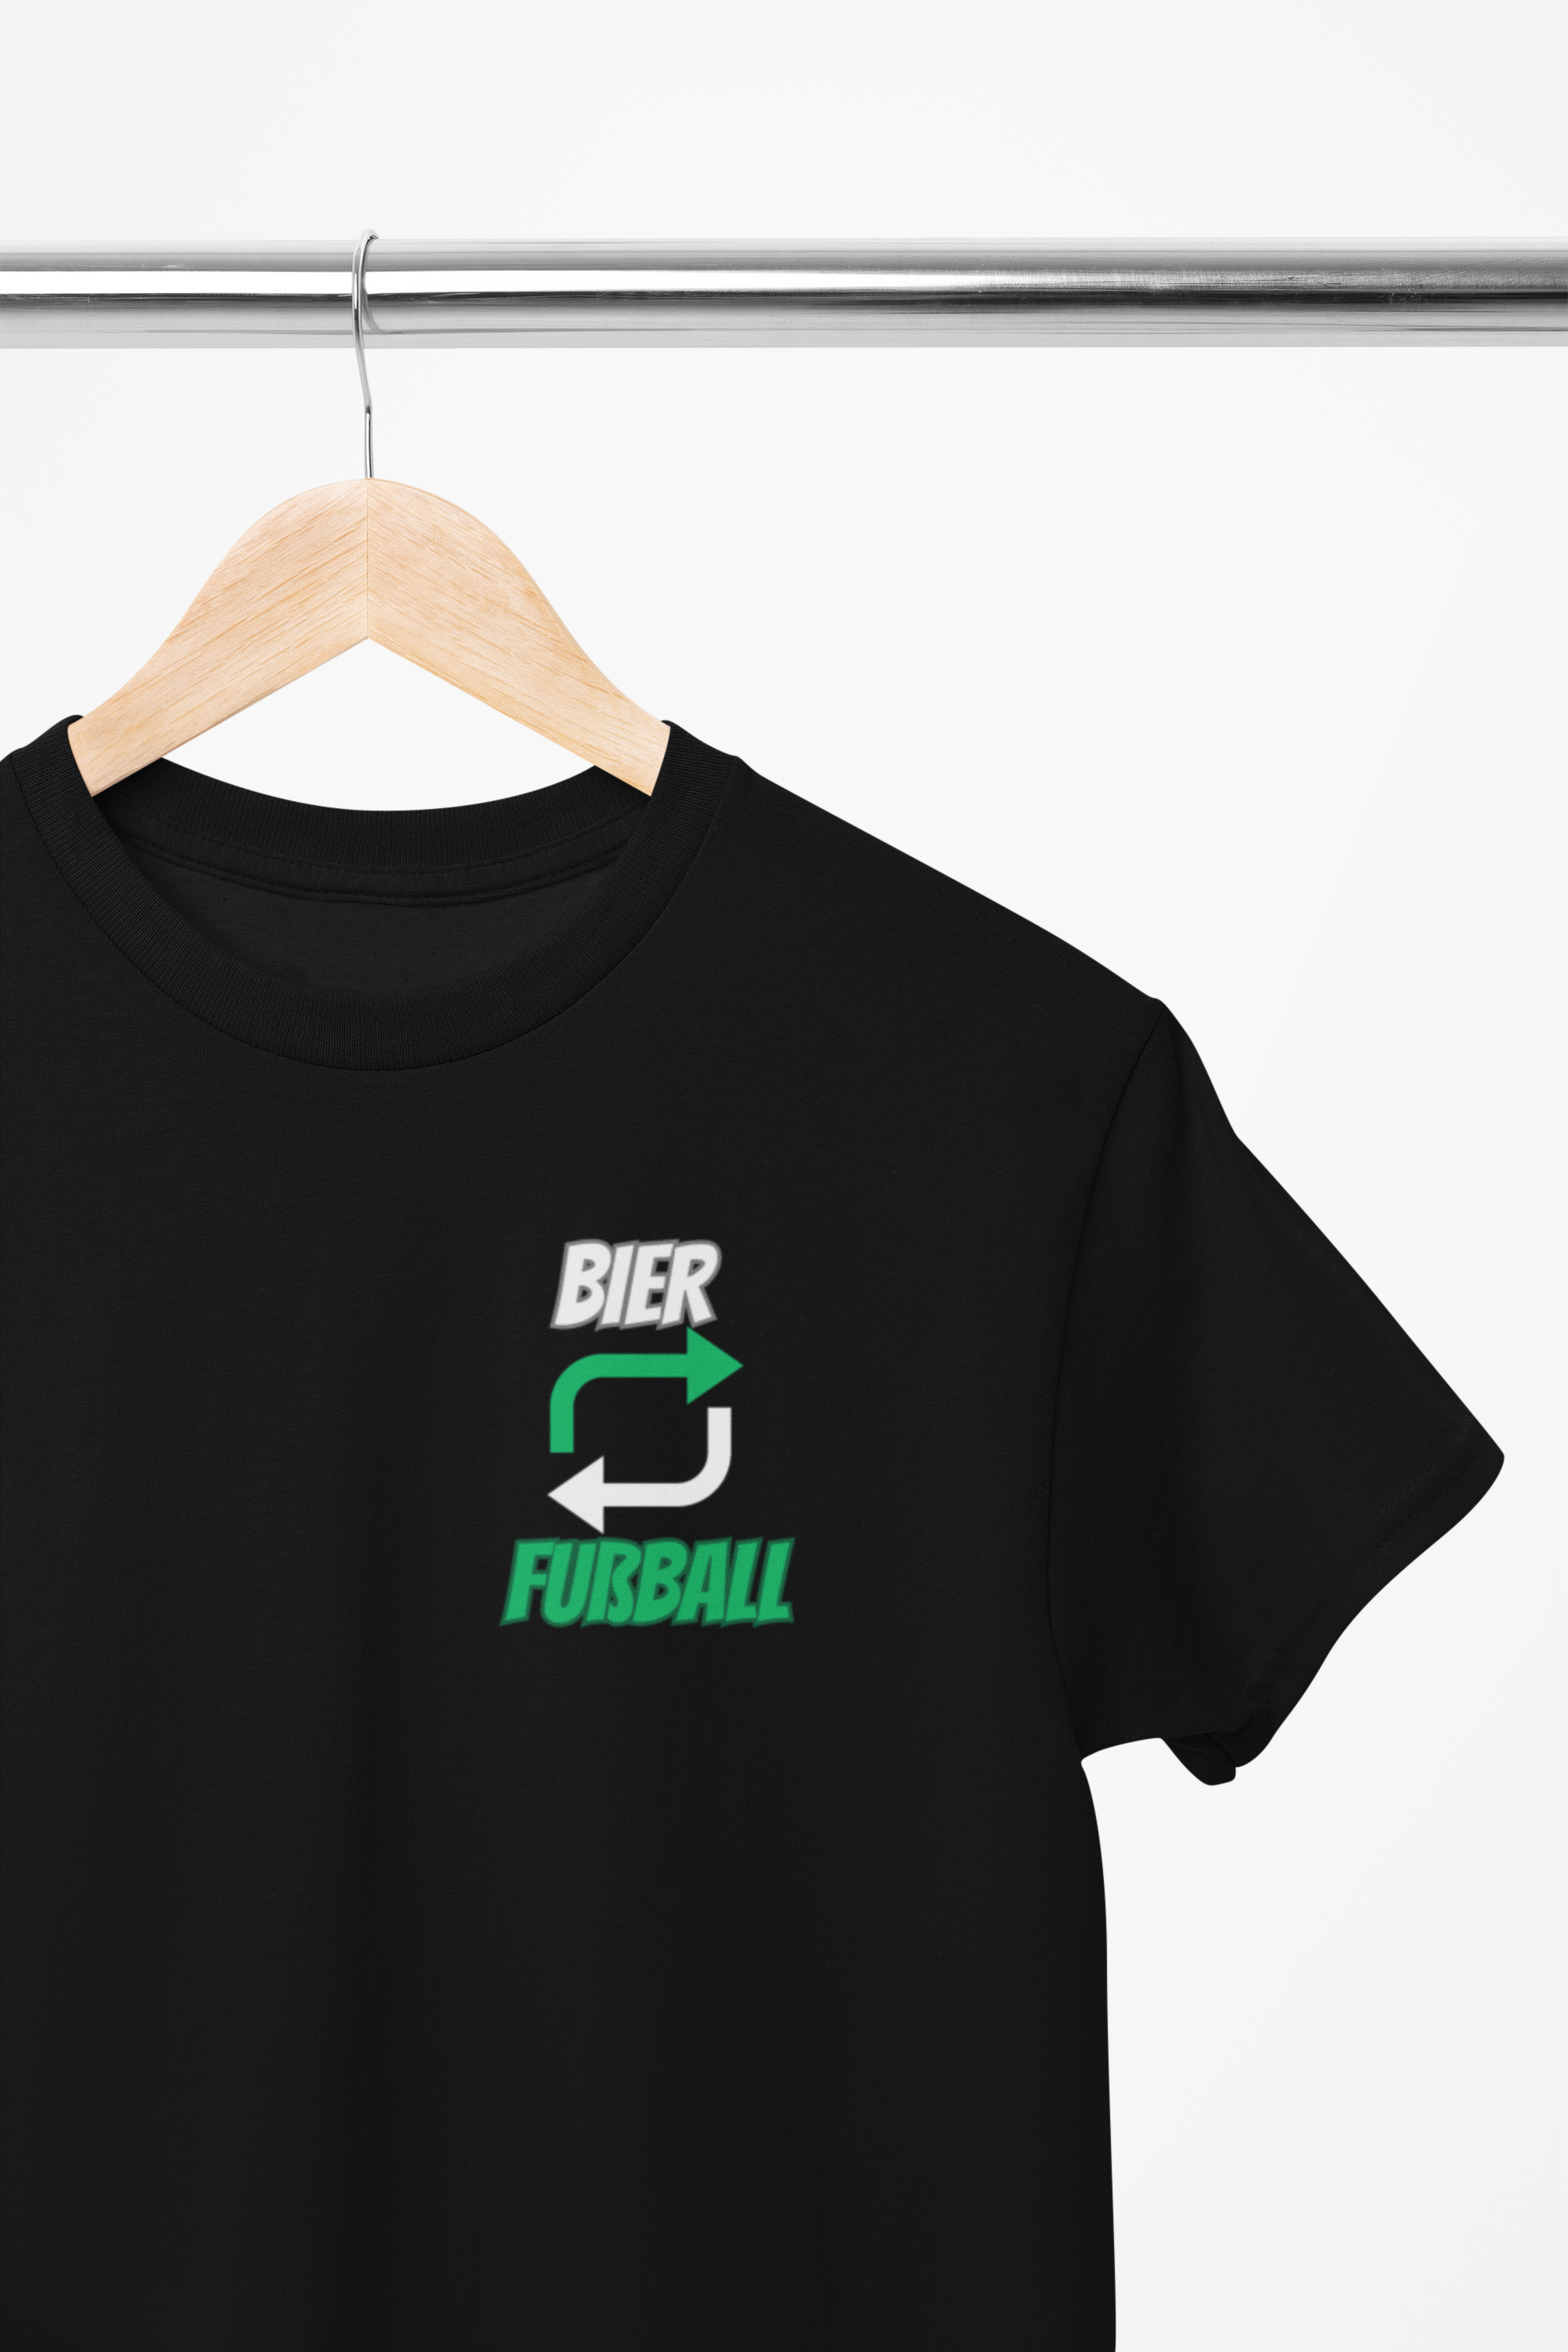 Bier-Fußball T-Shirt